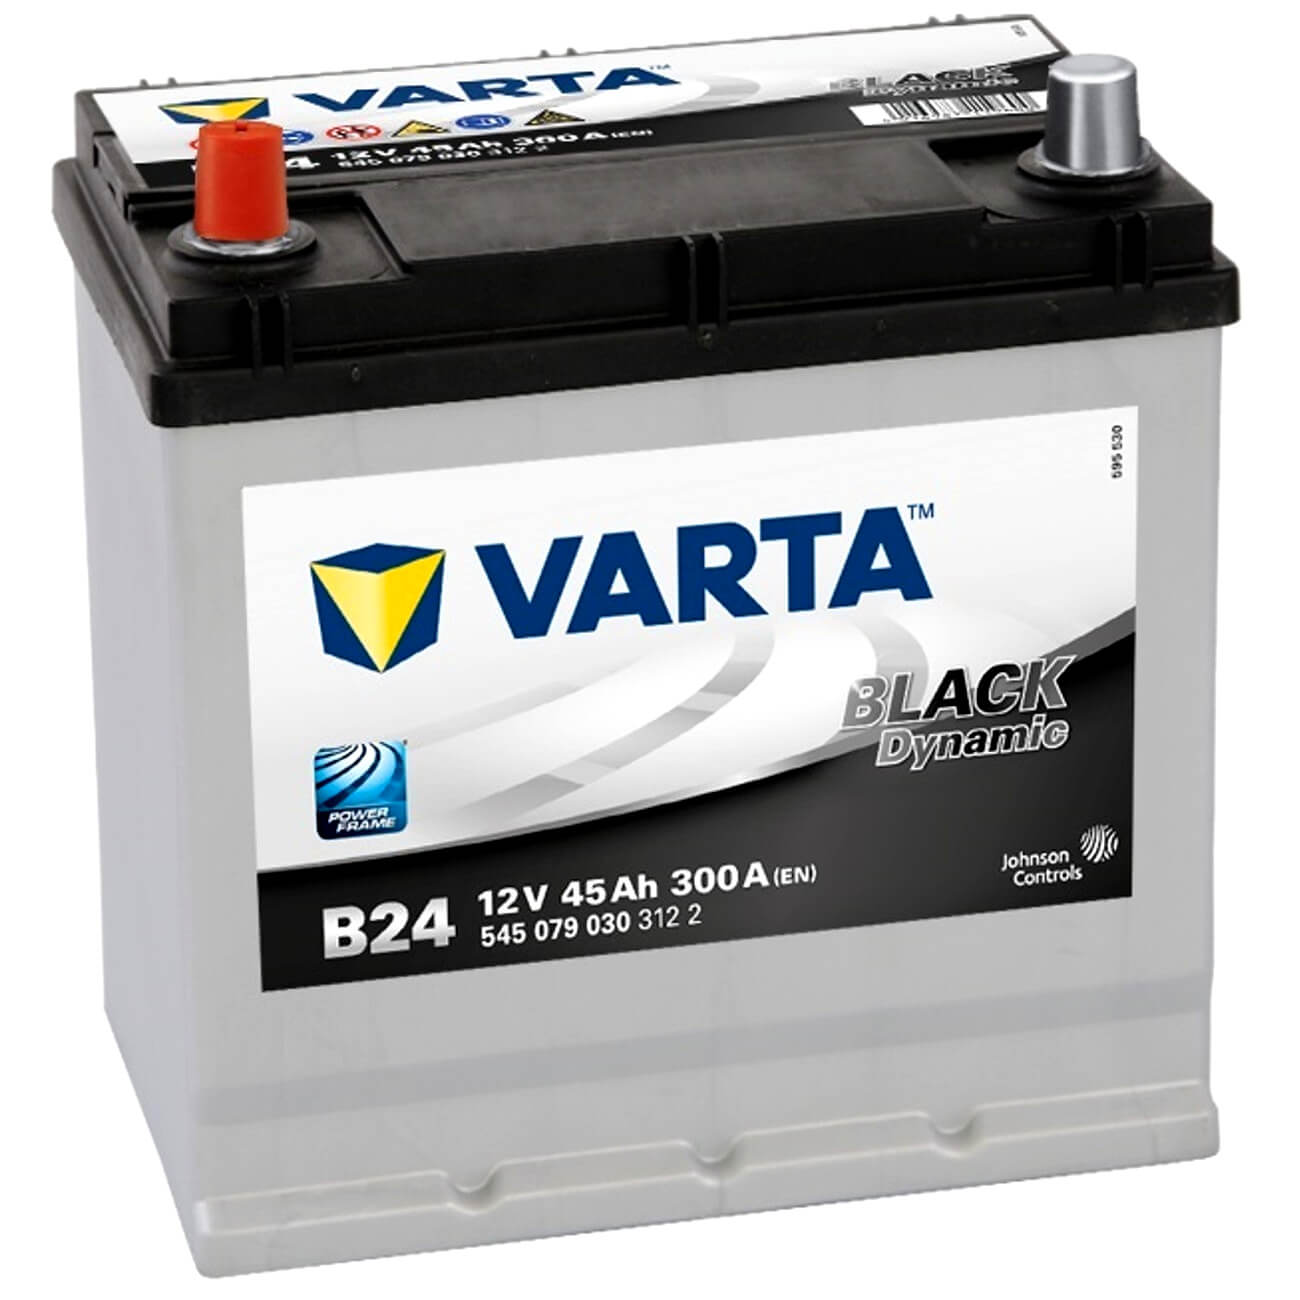 http://www.batterie-industrie-germany.de/cdn/shop/files/Autobatterie-Varta-Black-Dynamic-B24-12V-45Ah-5450790303122-Seite-links.jpg?v=1700752073